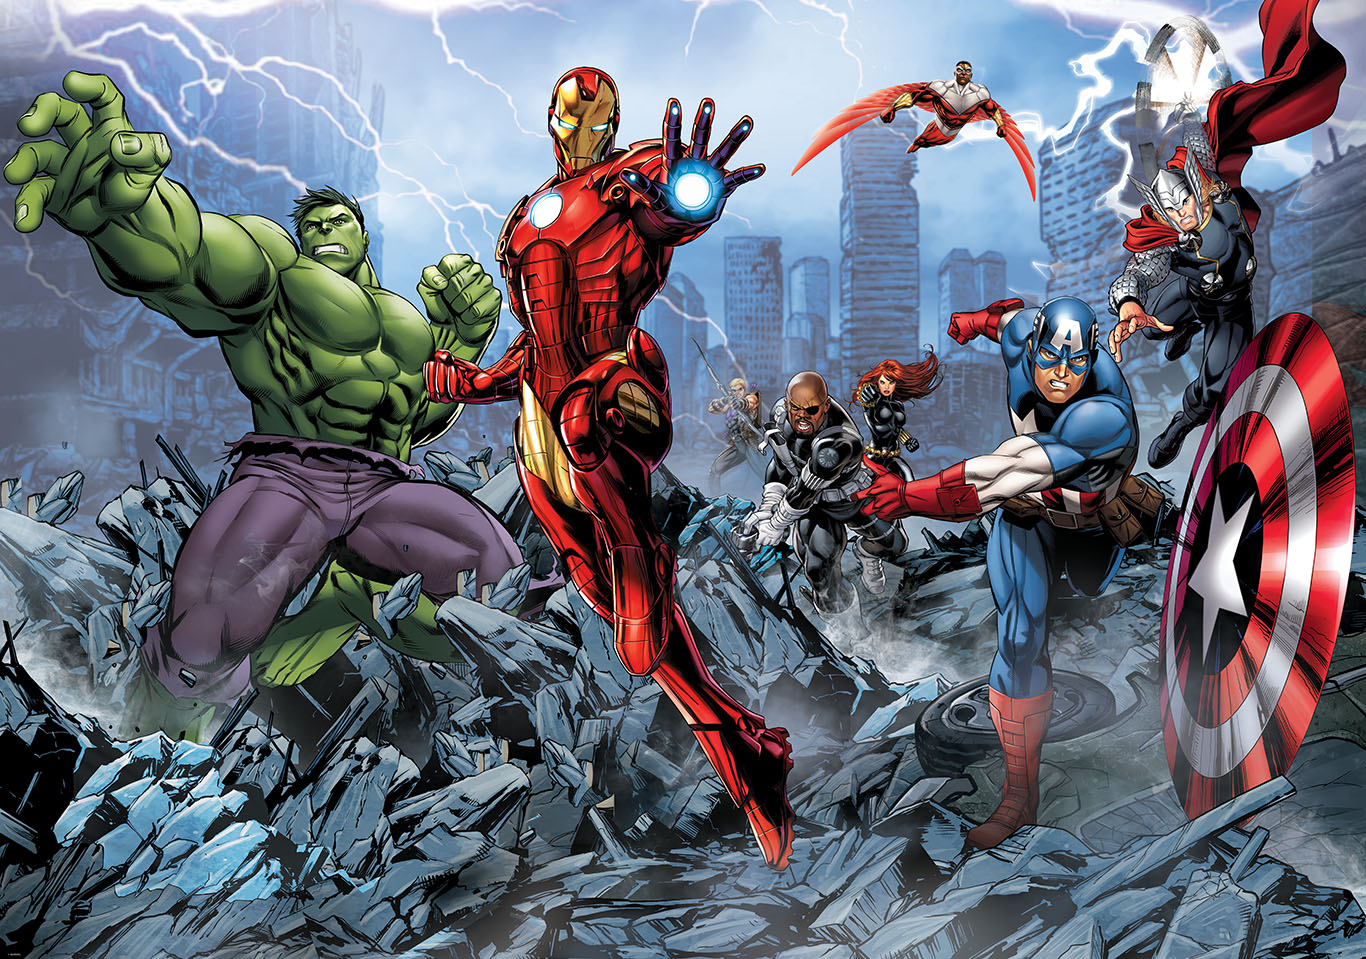 HD wallpaper Avengers cartoon illustration The Avengers Captain America   Wallpaper Flare